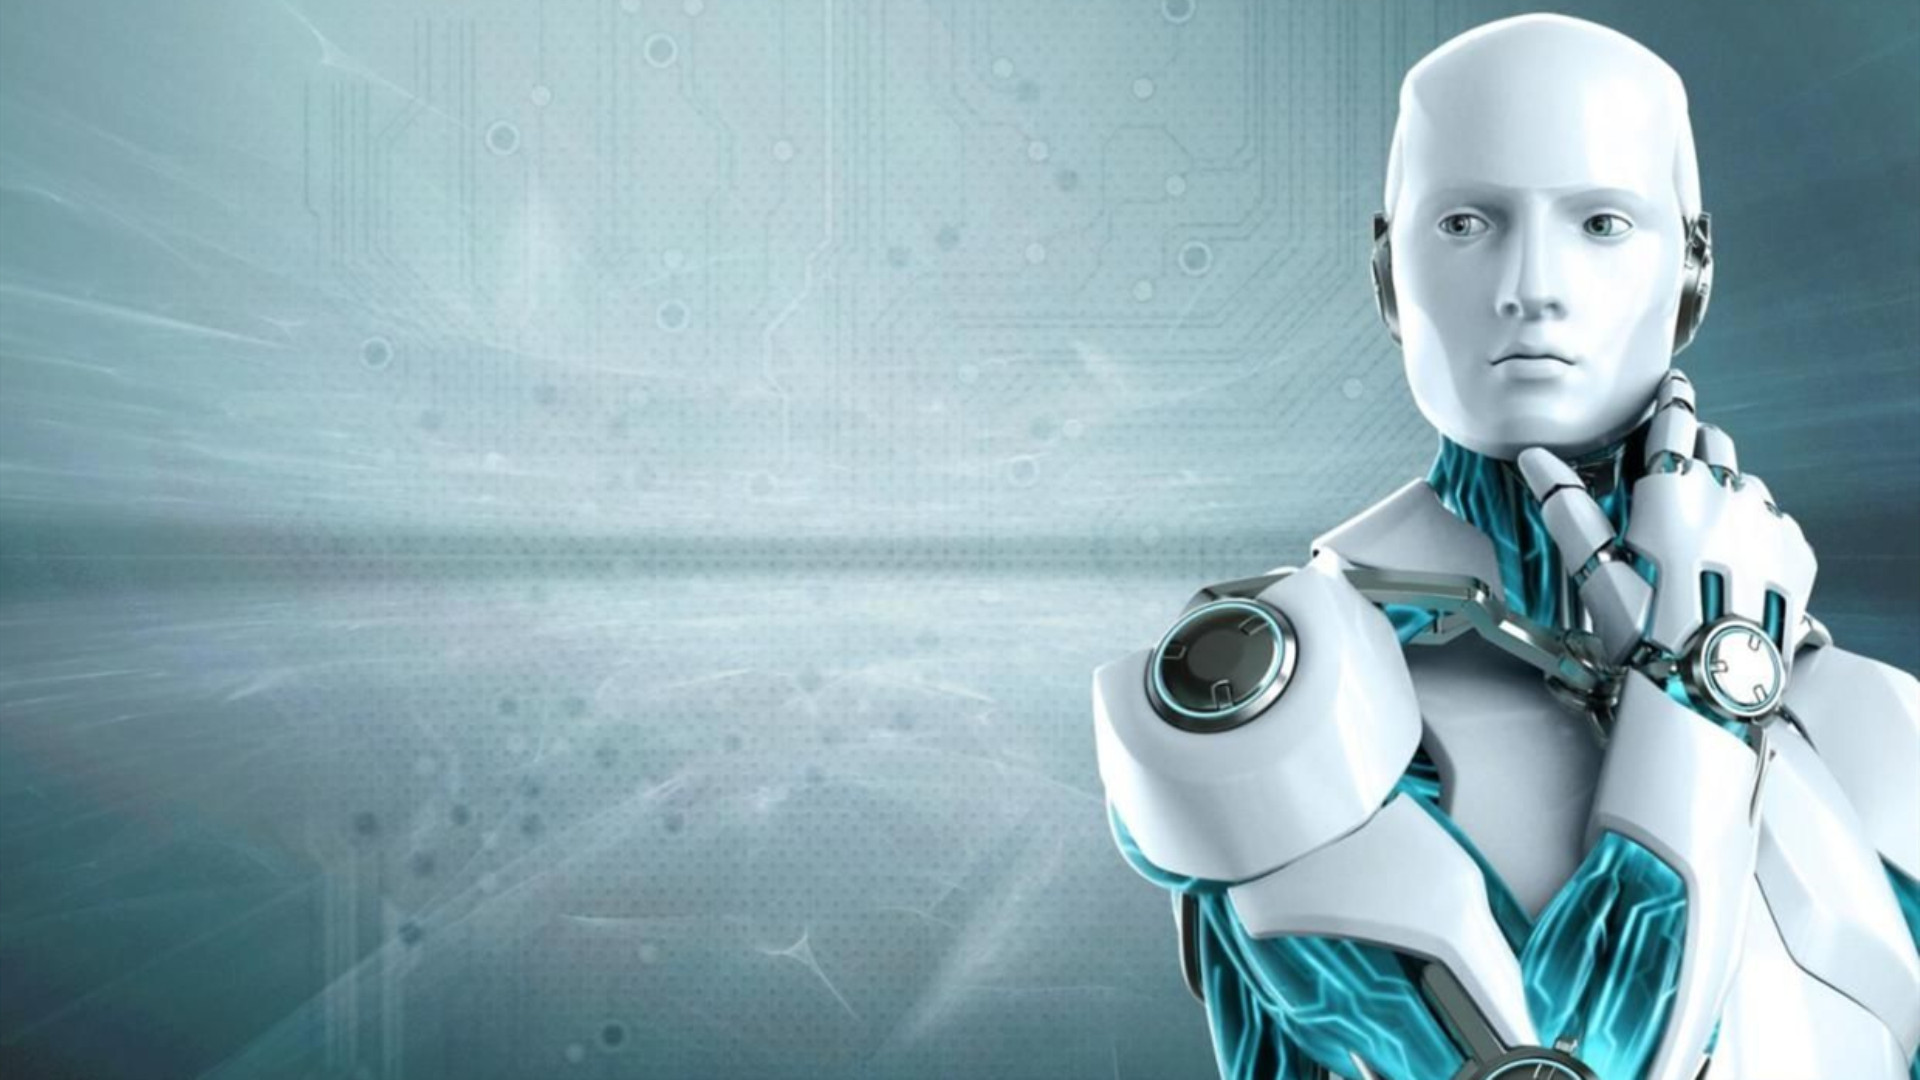 科幻片中机器人统治地球,现今人工智能发展飞速,人类能否被取代